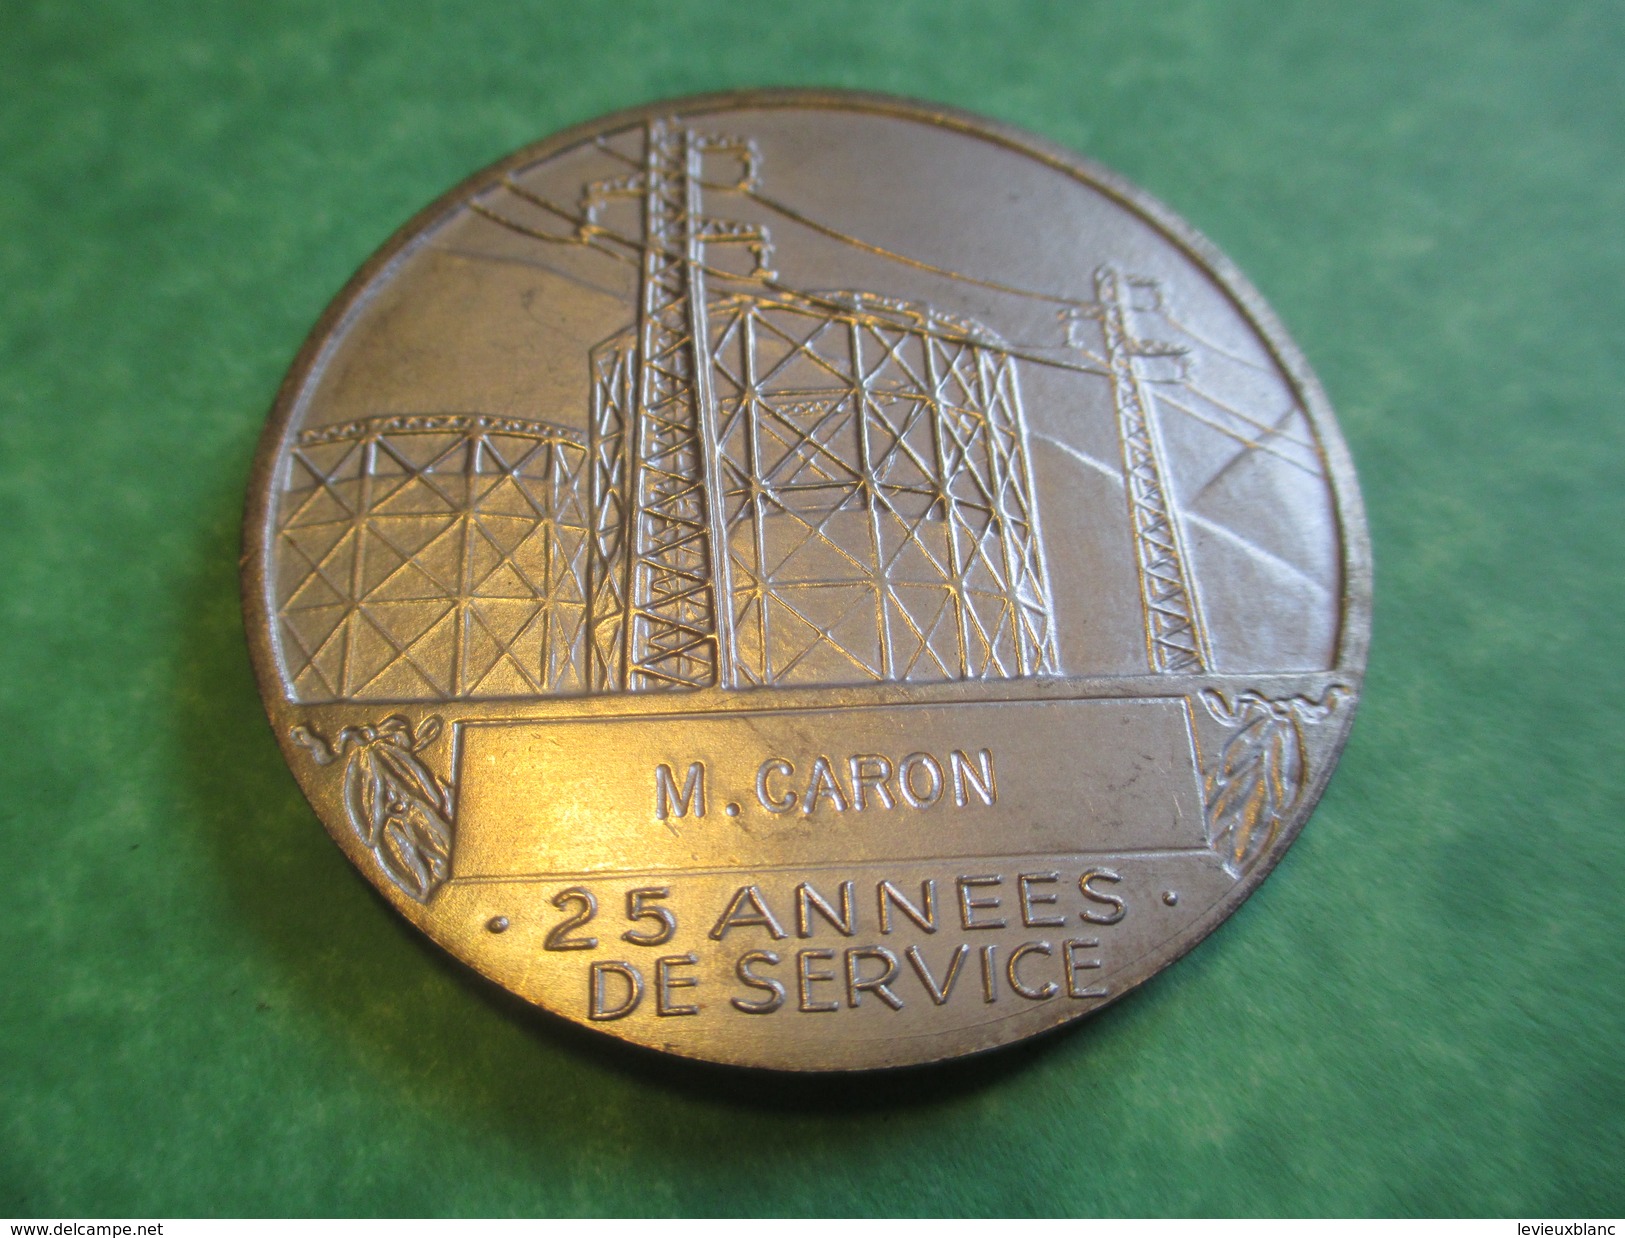 Médaille D'Ancienneté/ Entreprise/ Electricité De France Et Gaz De France/25 Années De Service/CARON/Modéle1961   MED103 - Professionnels / De Société